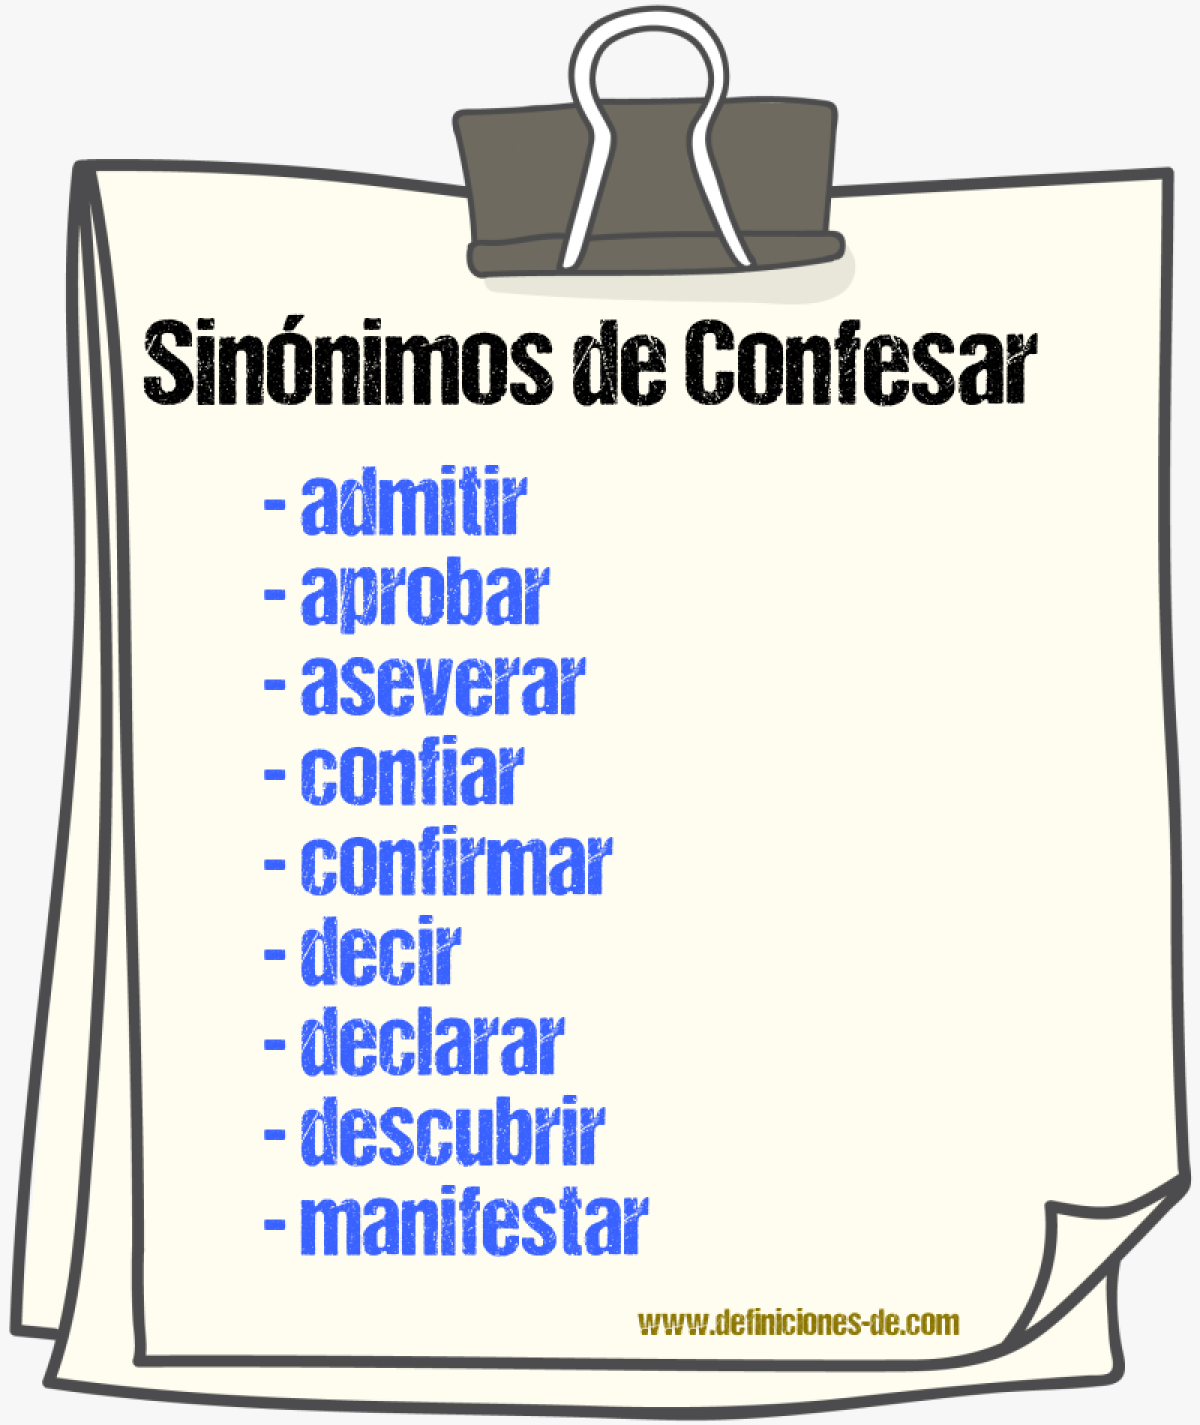 Sinónimos de confesar